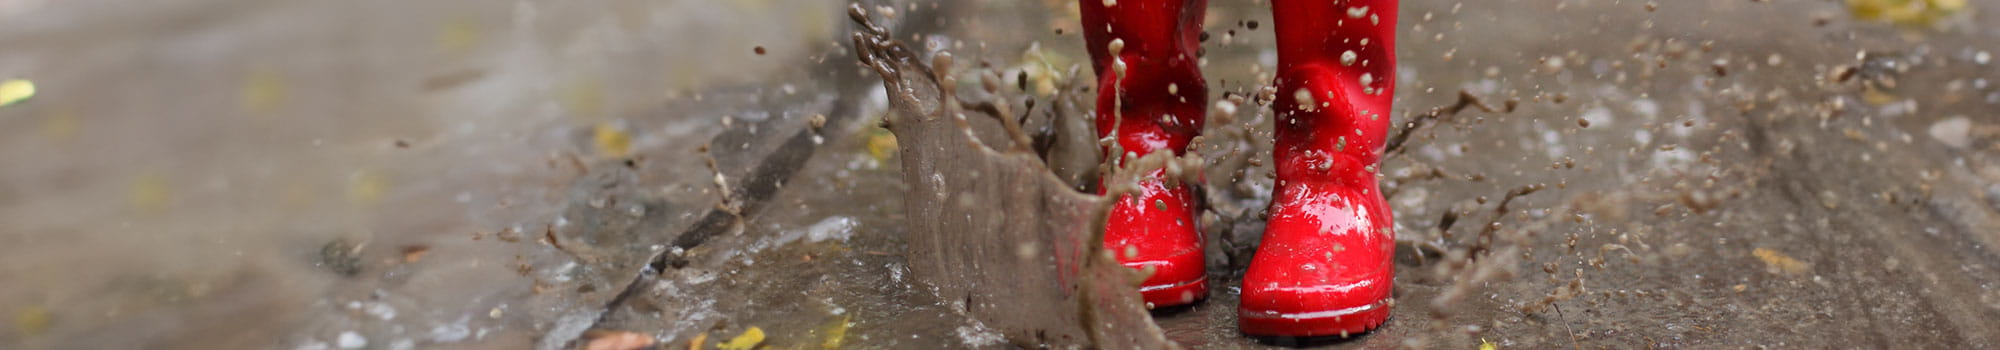 Kind in roten Gummistiefeln springt in eine Pfütze, Nahaufnahme